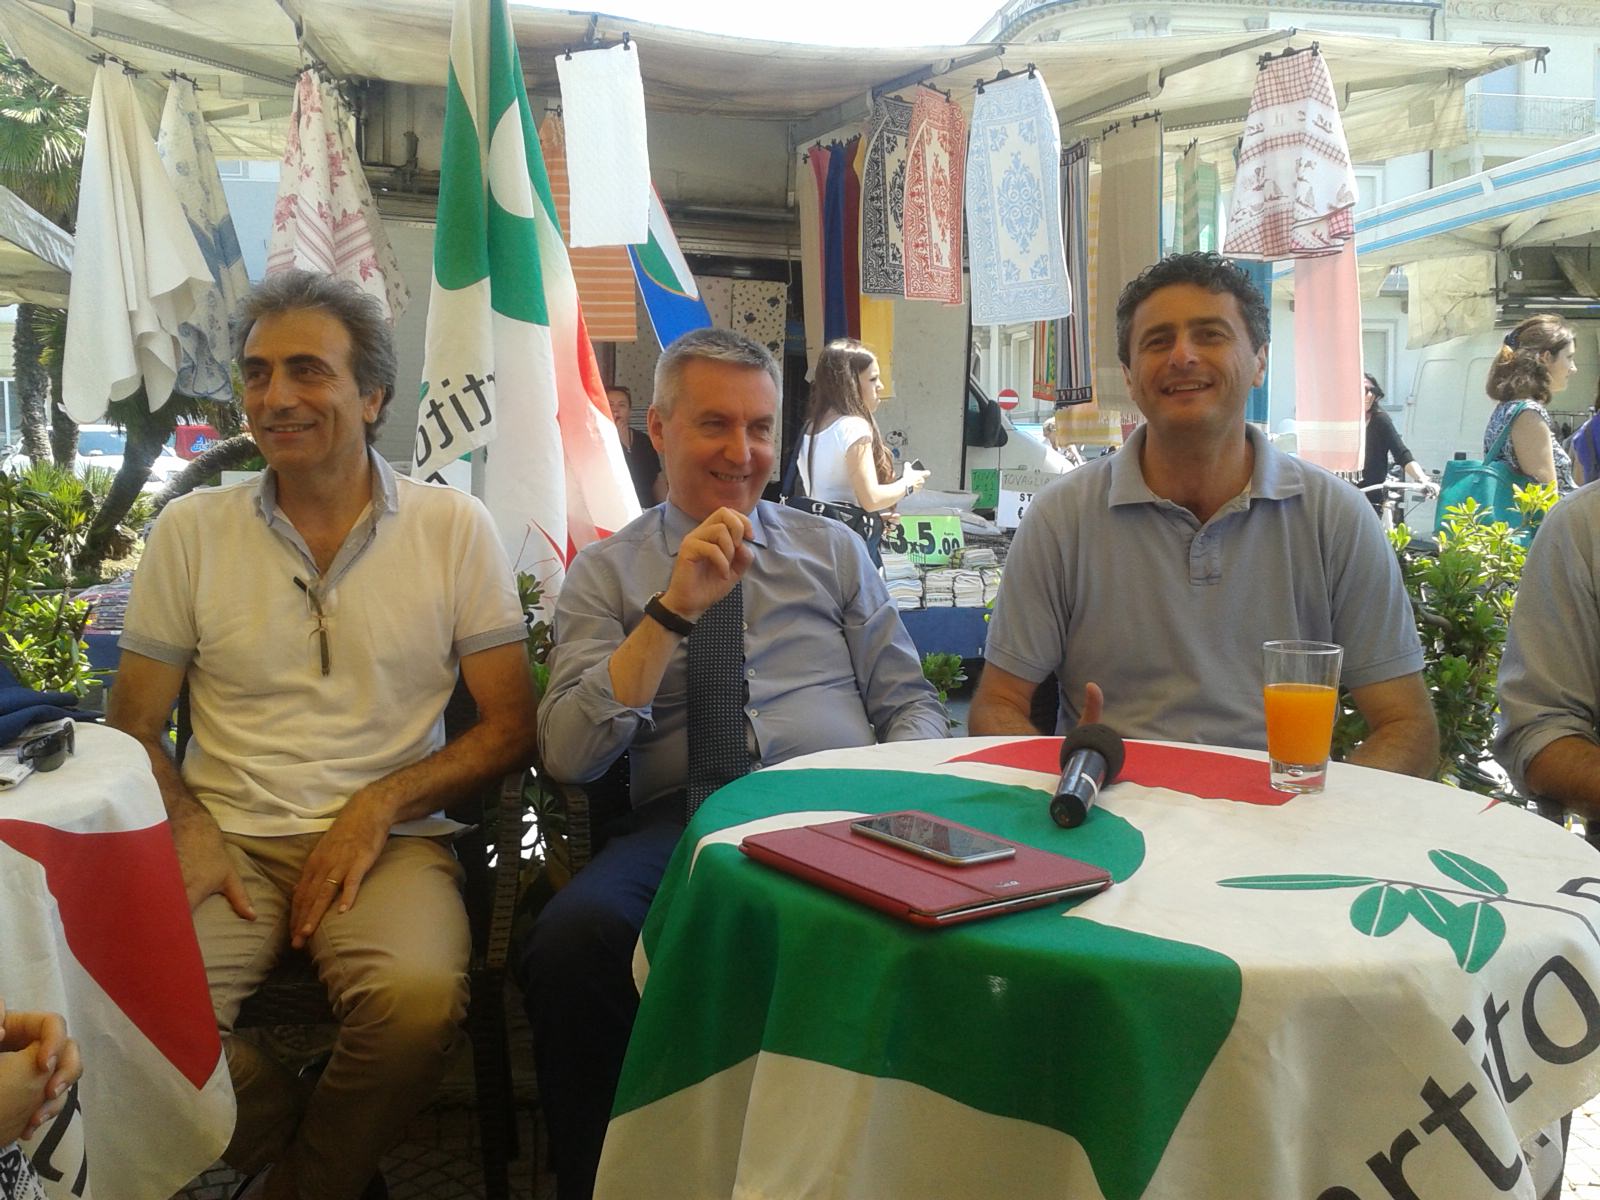 “Il vero e unico rappresentante del Pd a Viareggio è Luca Poletti”. Lorenzo Guerini a sostegno del candidato sindaco